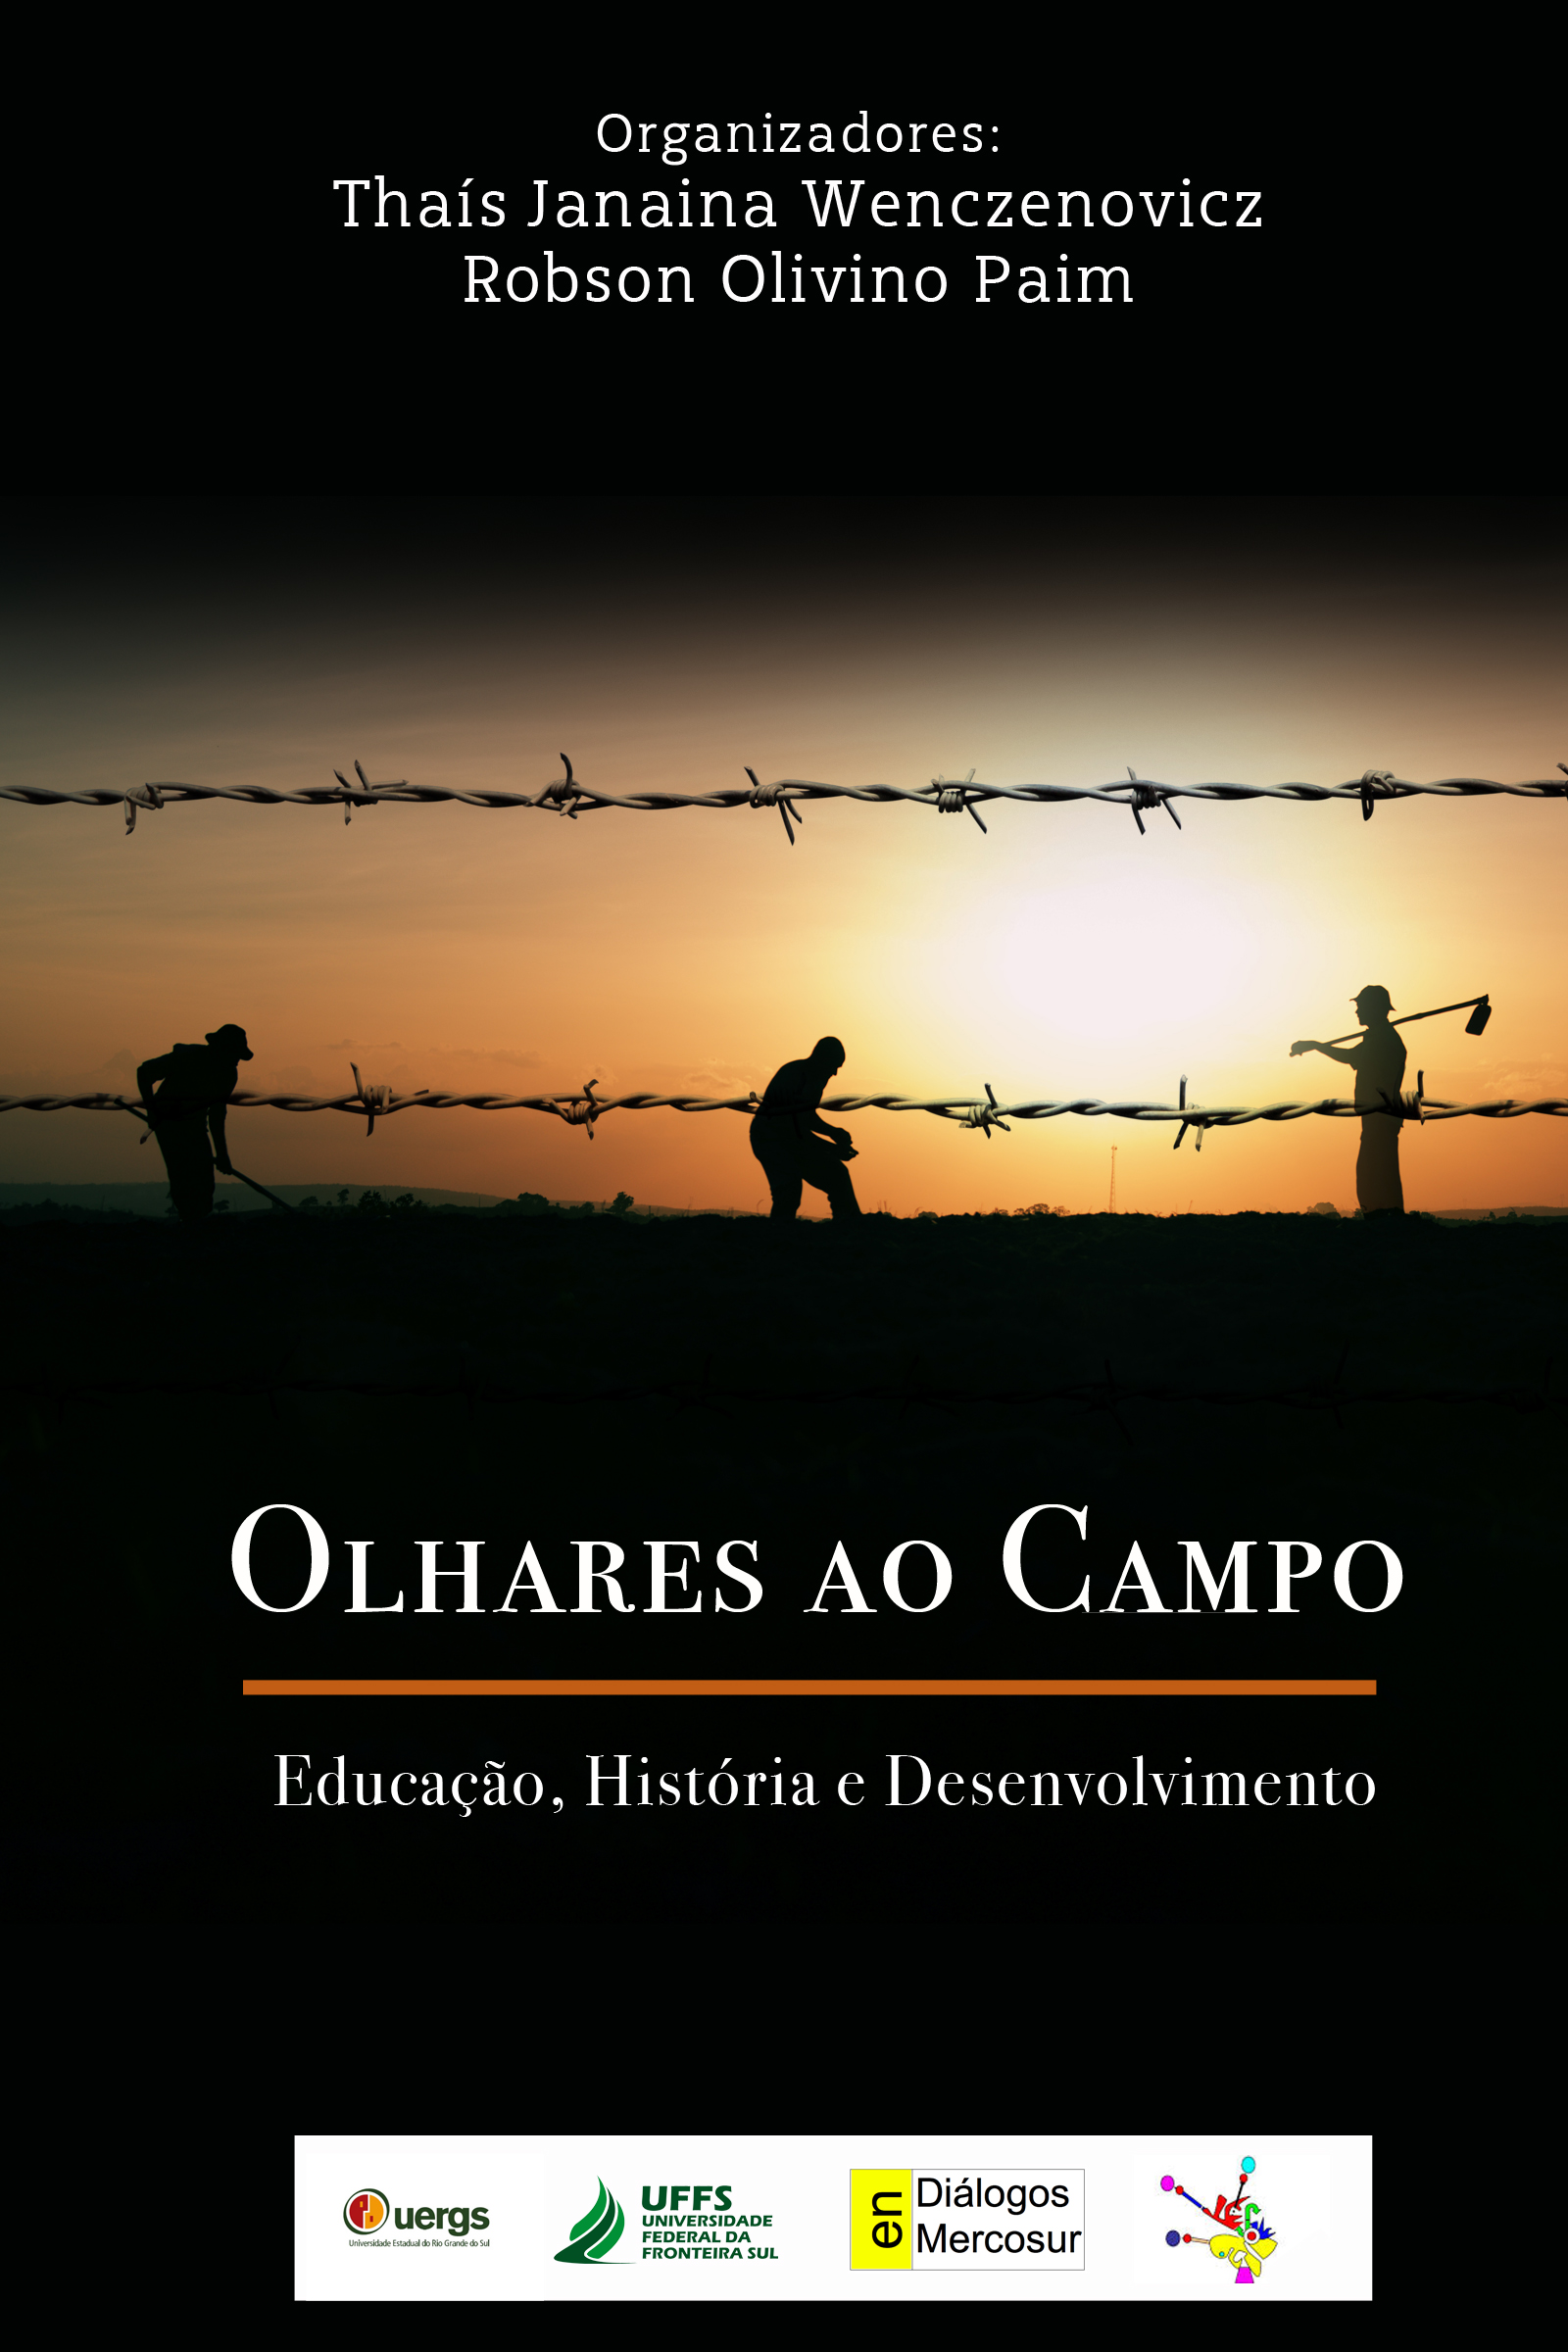 OLHARES AO CAMPO